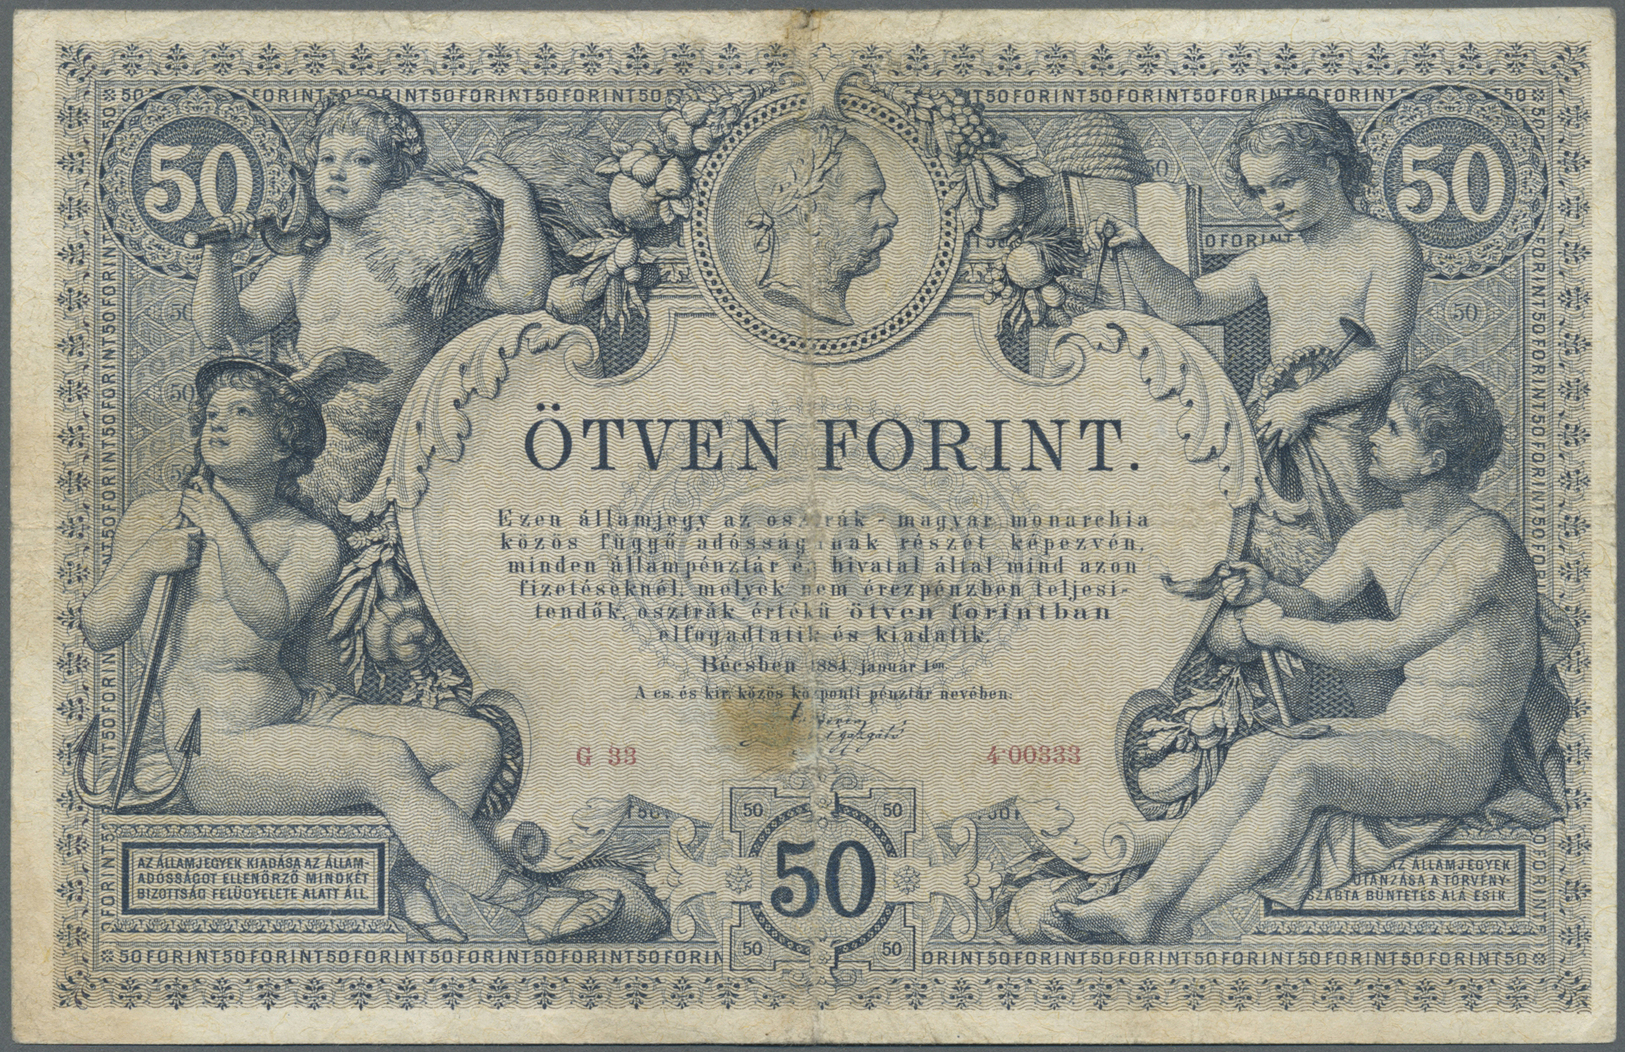 00160 Austria / Österreich: K.u.K. Reichs-Central-Casse 50 Gulden 1884, P.A155, Very Rare And Hard To Find Banknote With - Austria